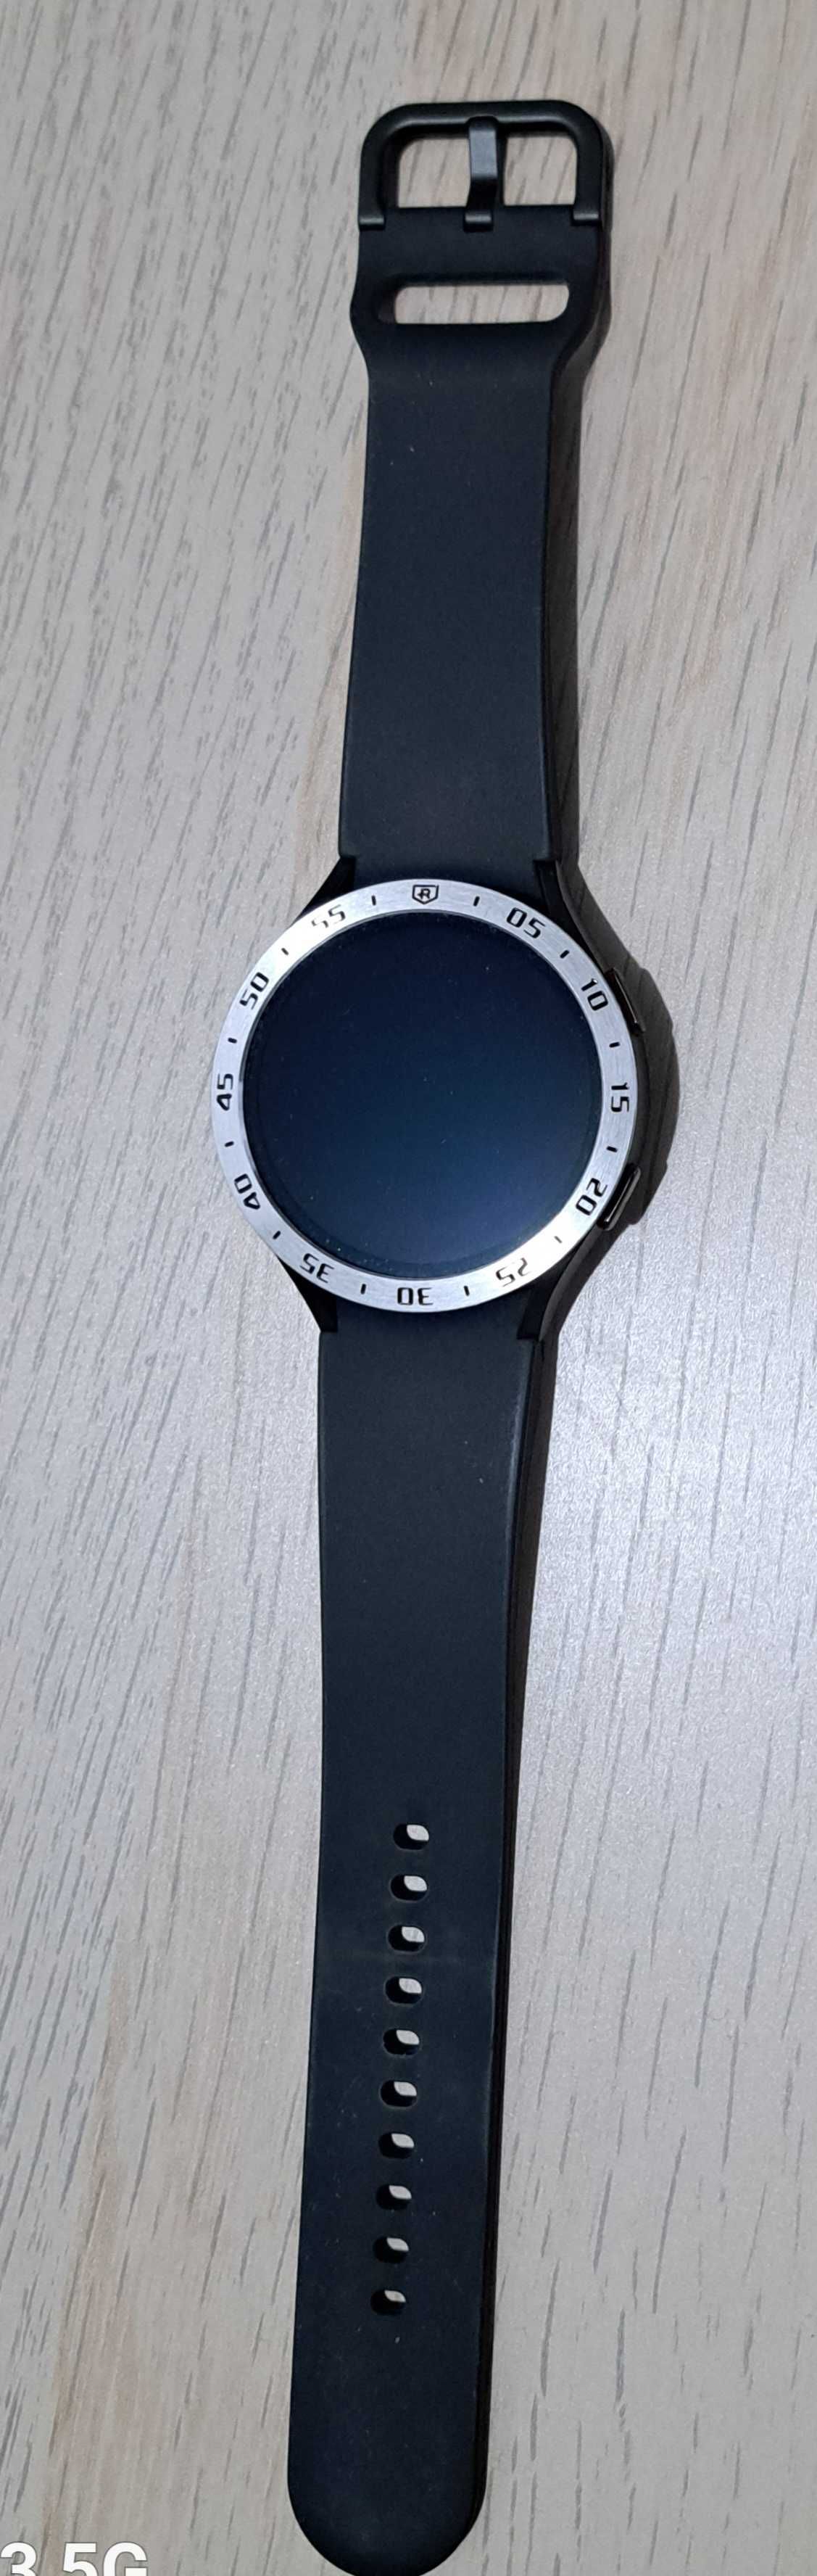 Samsung watch 4 in garanție